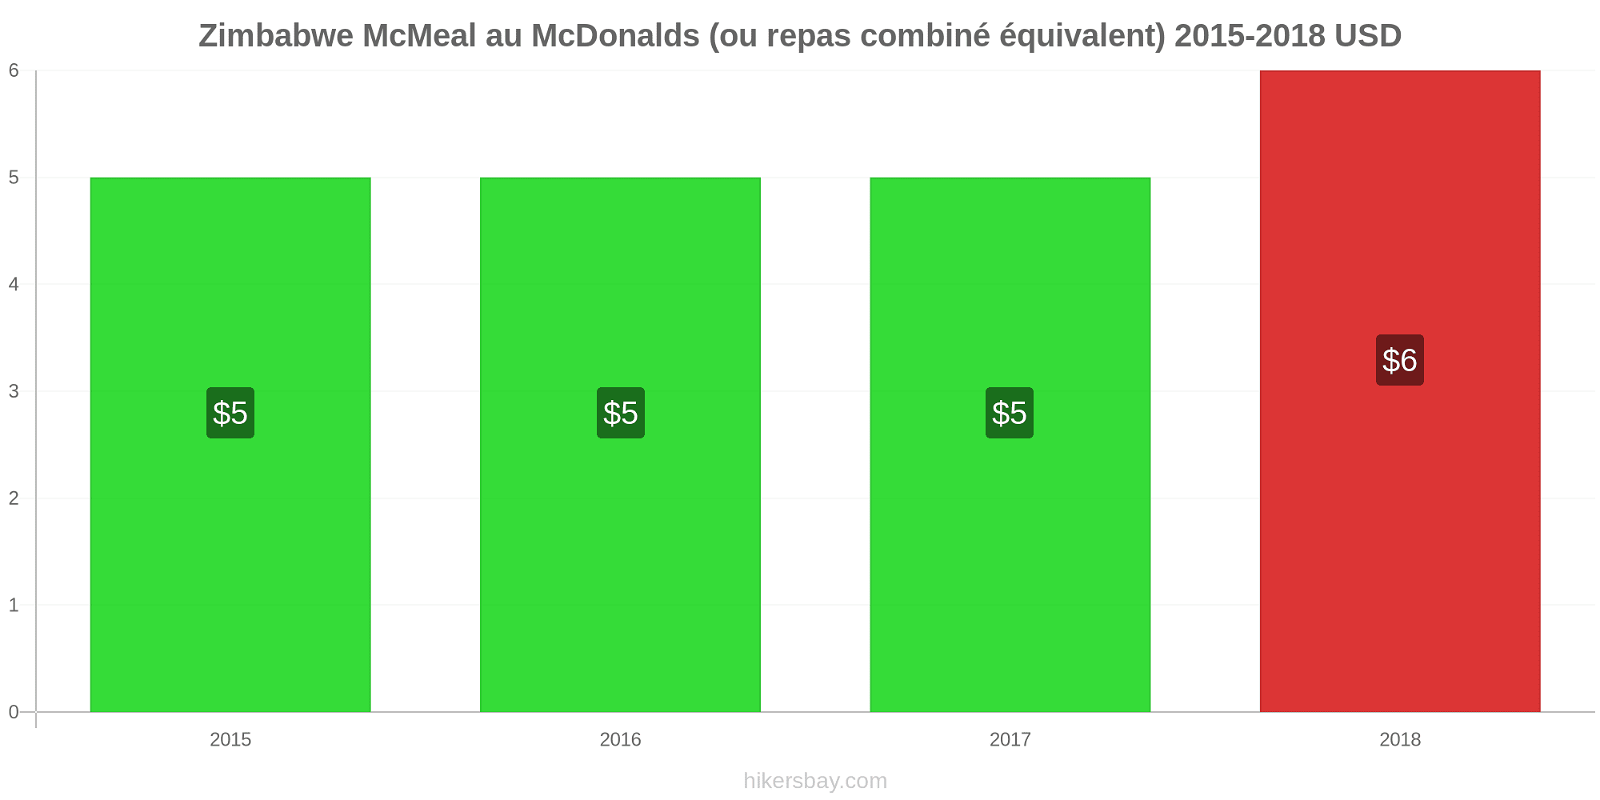 Zimbabwe changements de prix McMeal à McDonald ' s (ou Combo équivalent tourteau) hikersbay.com